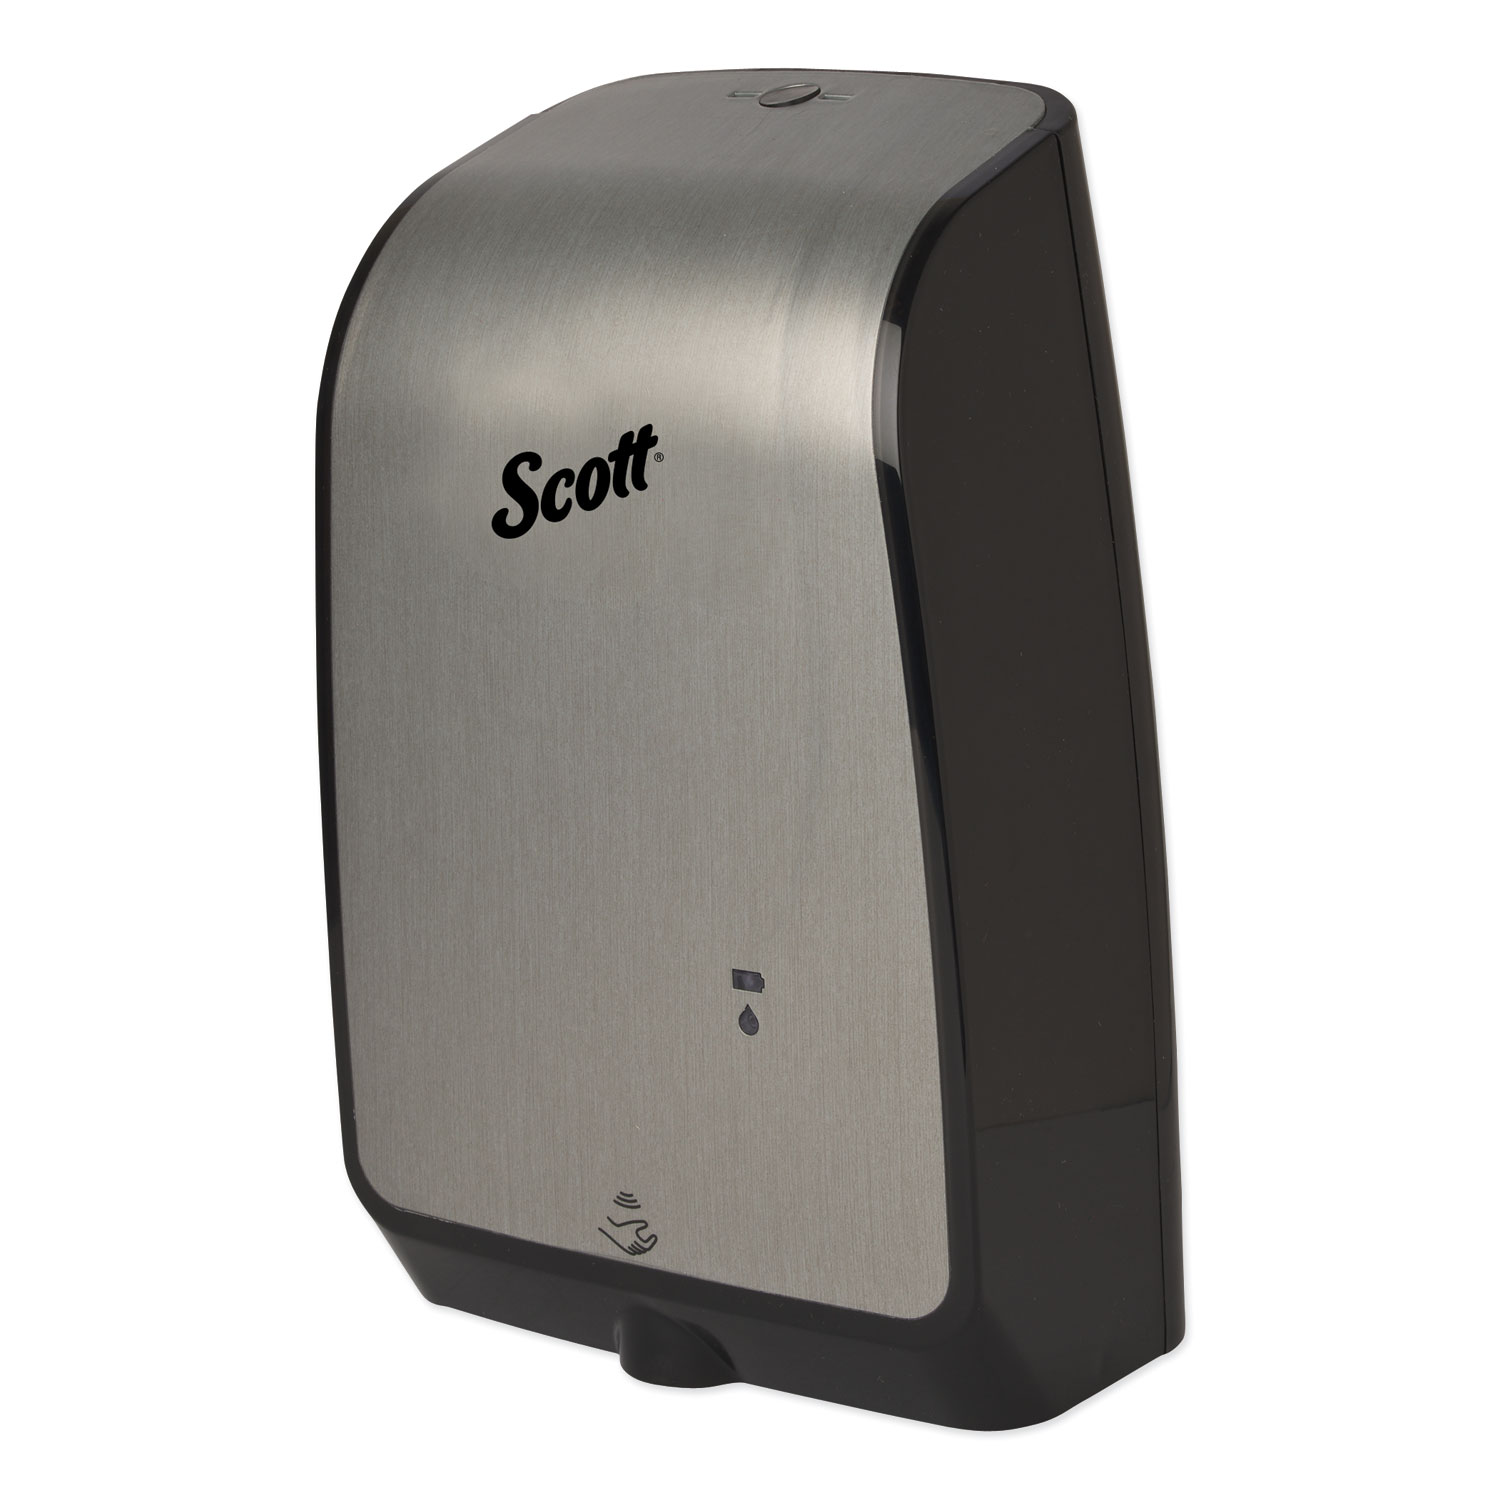  Scott 32508 Electronic Skin Care Dispenser, 1200 mL, 7.3 x 4 x 11.7, Brushed Metallic (KCC32508) 